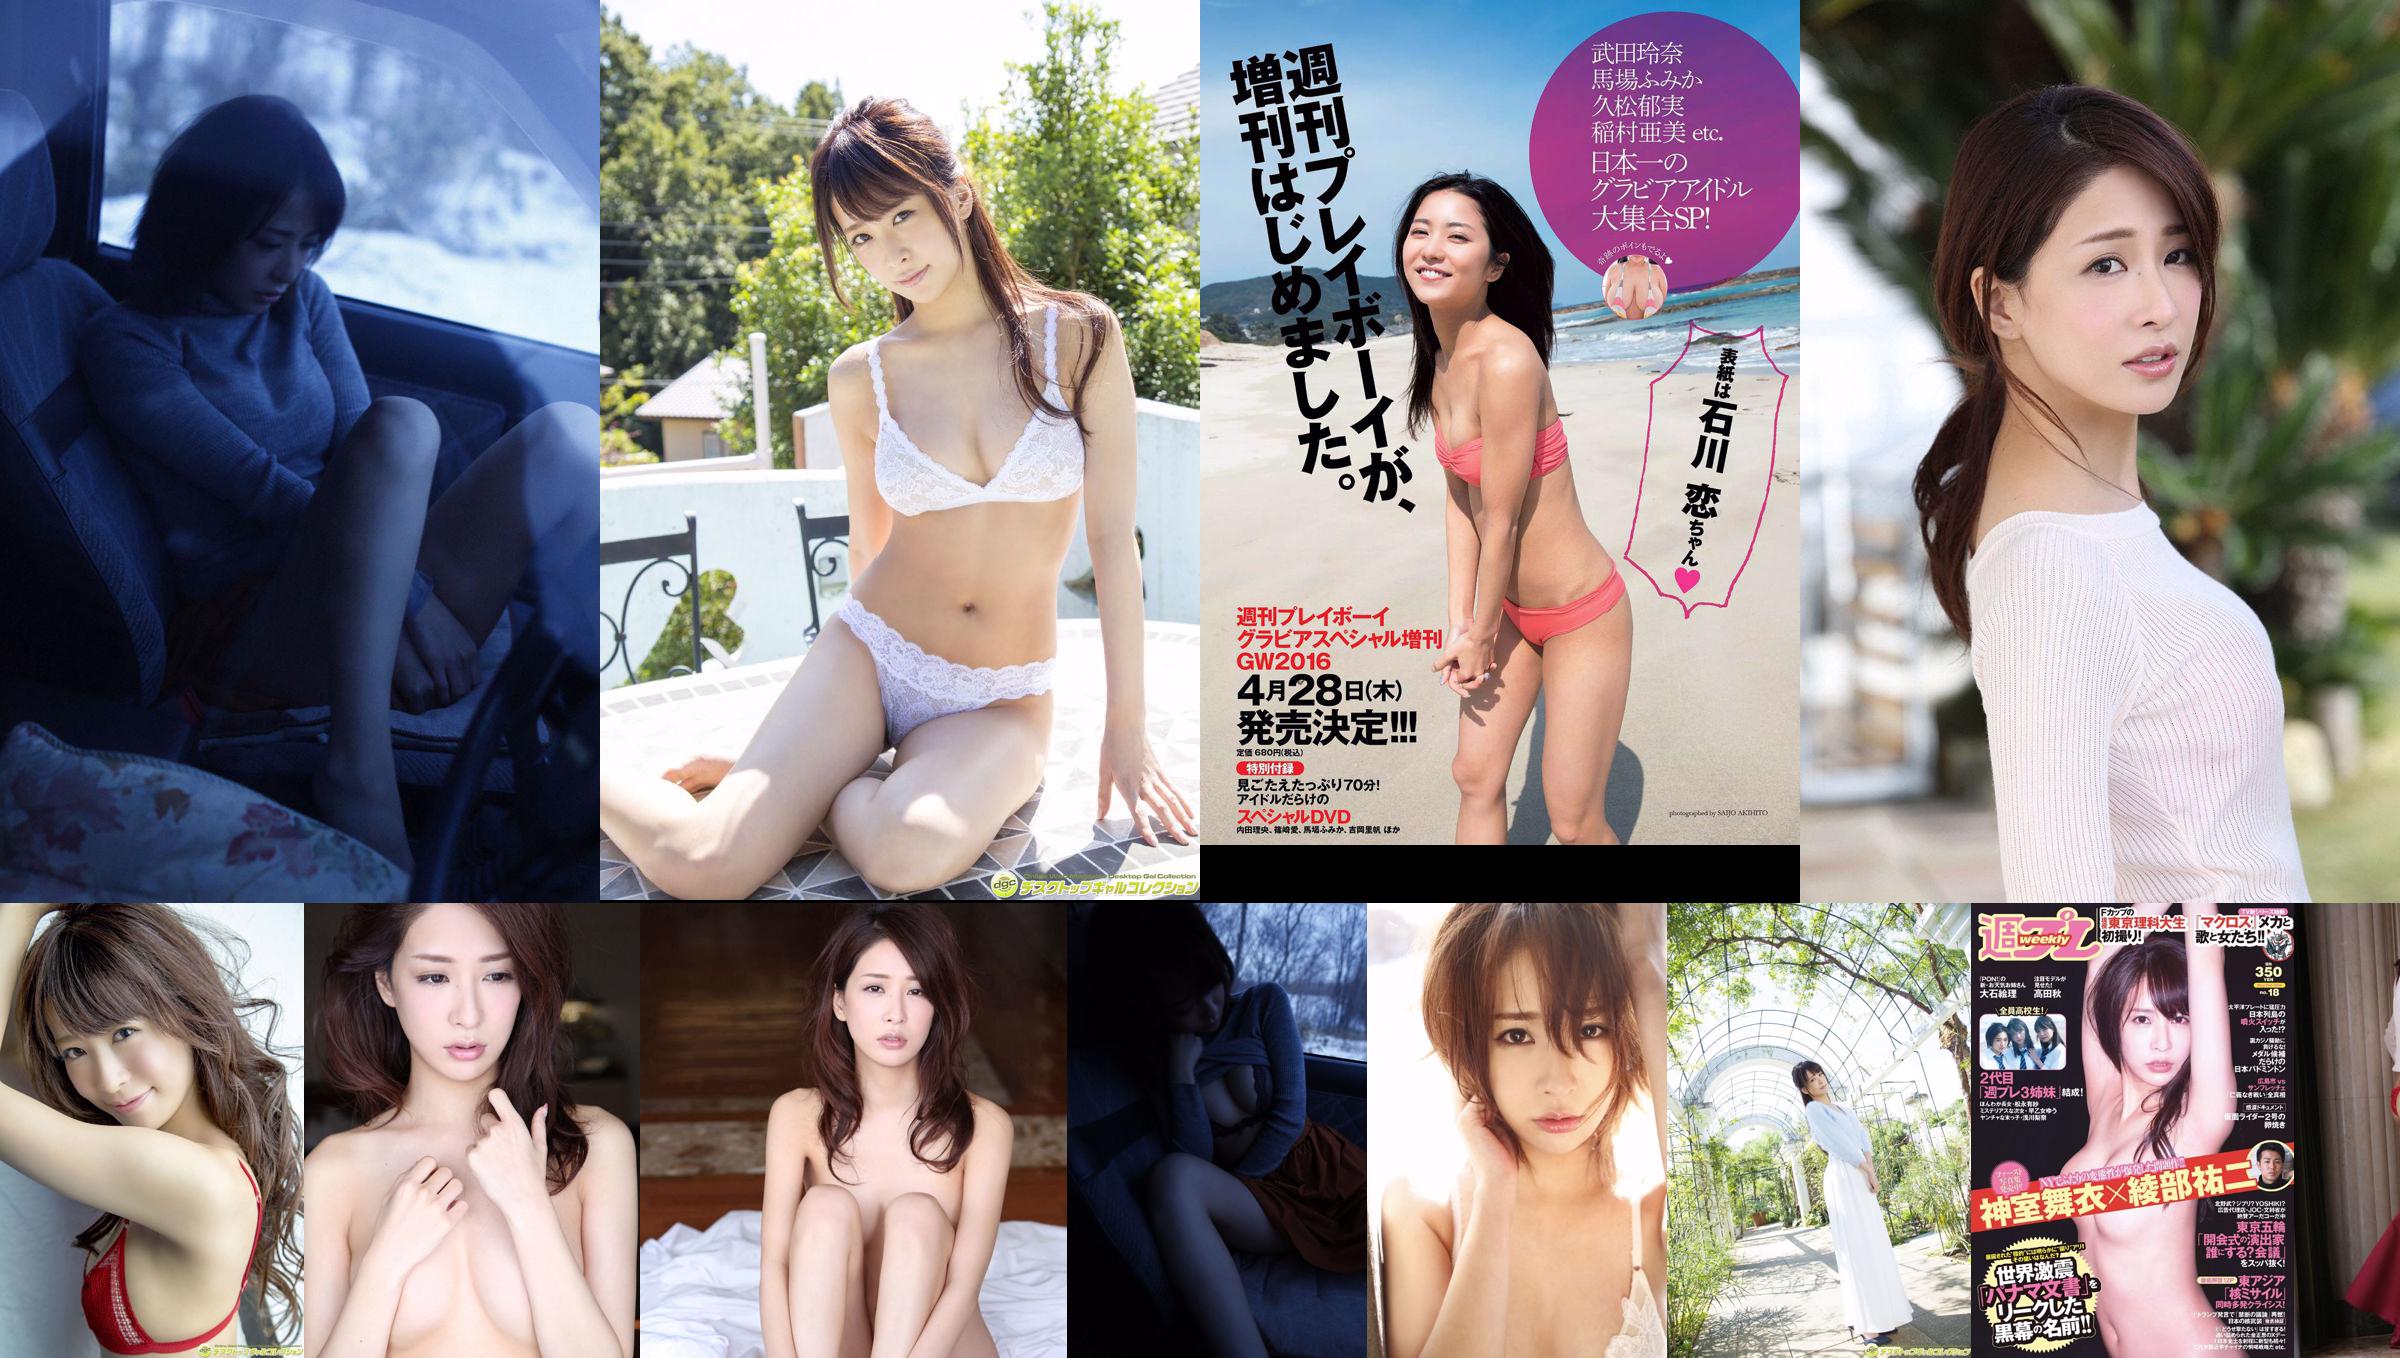 Mai Kamuro Arisa Matsunaga Yu Saotome Rina Asakawa Shu Takada Ayana Takeda Eri Oishi [Playboy Semanal] 2016 Fotografia No.18 No.539a71 Página 14